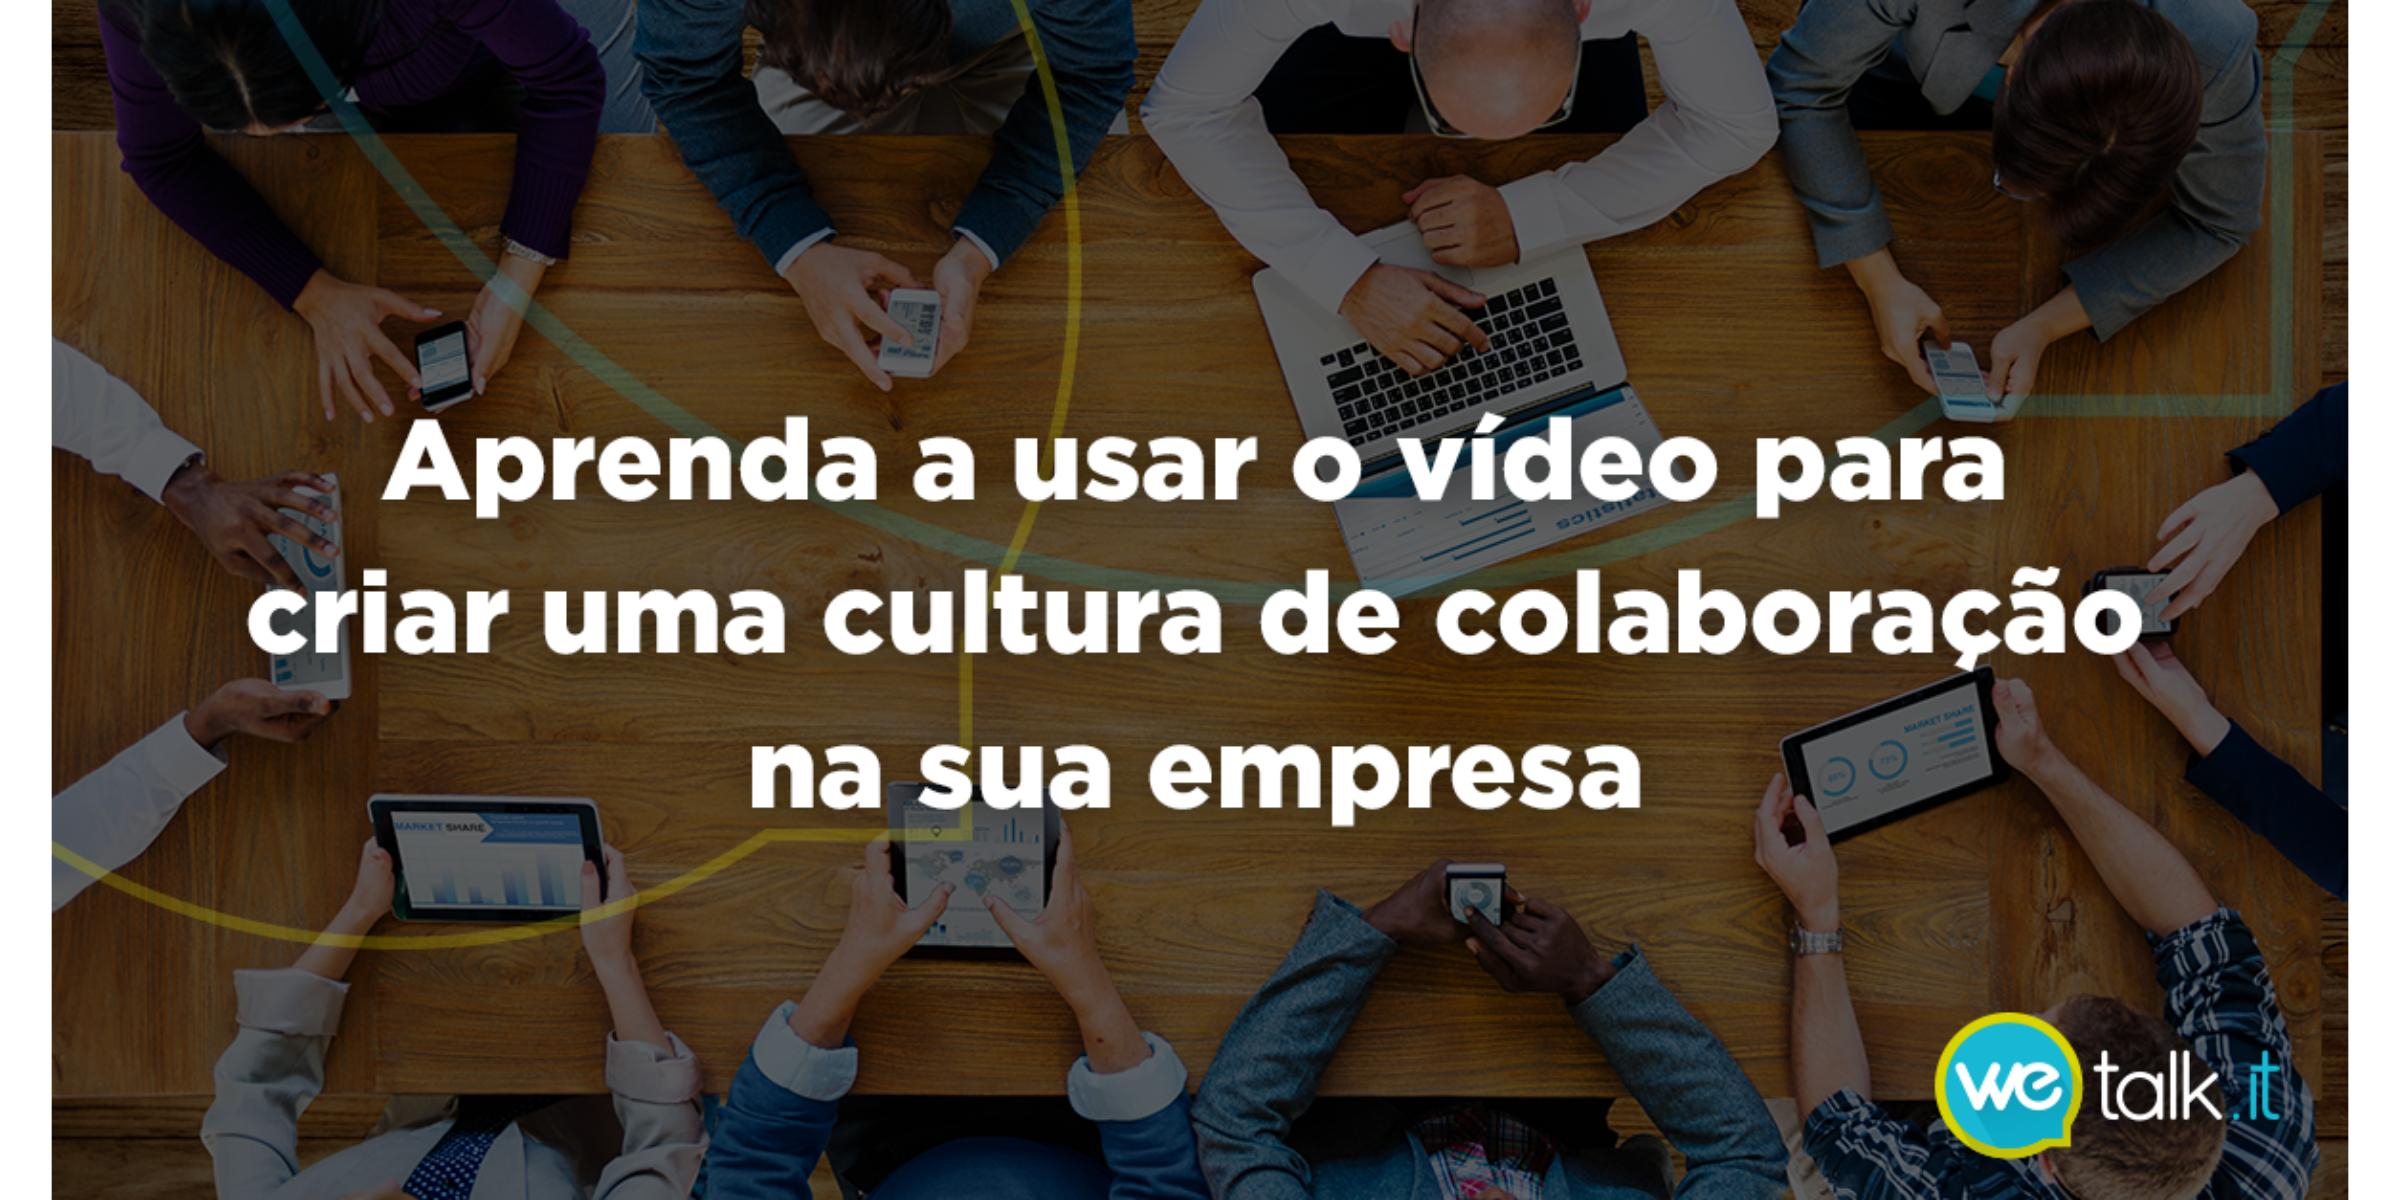 Como usar o vídeo para criar uma cultura de colaboração na sua empresa?